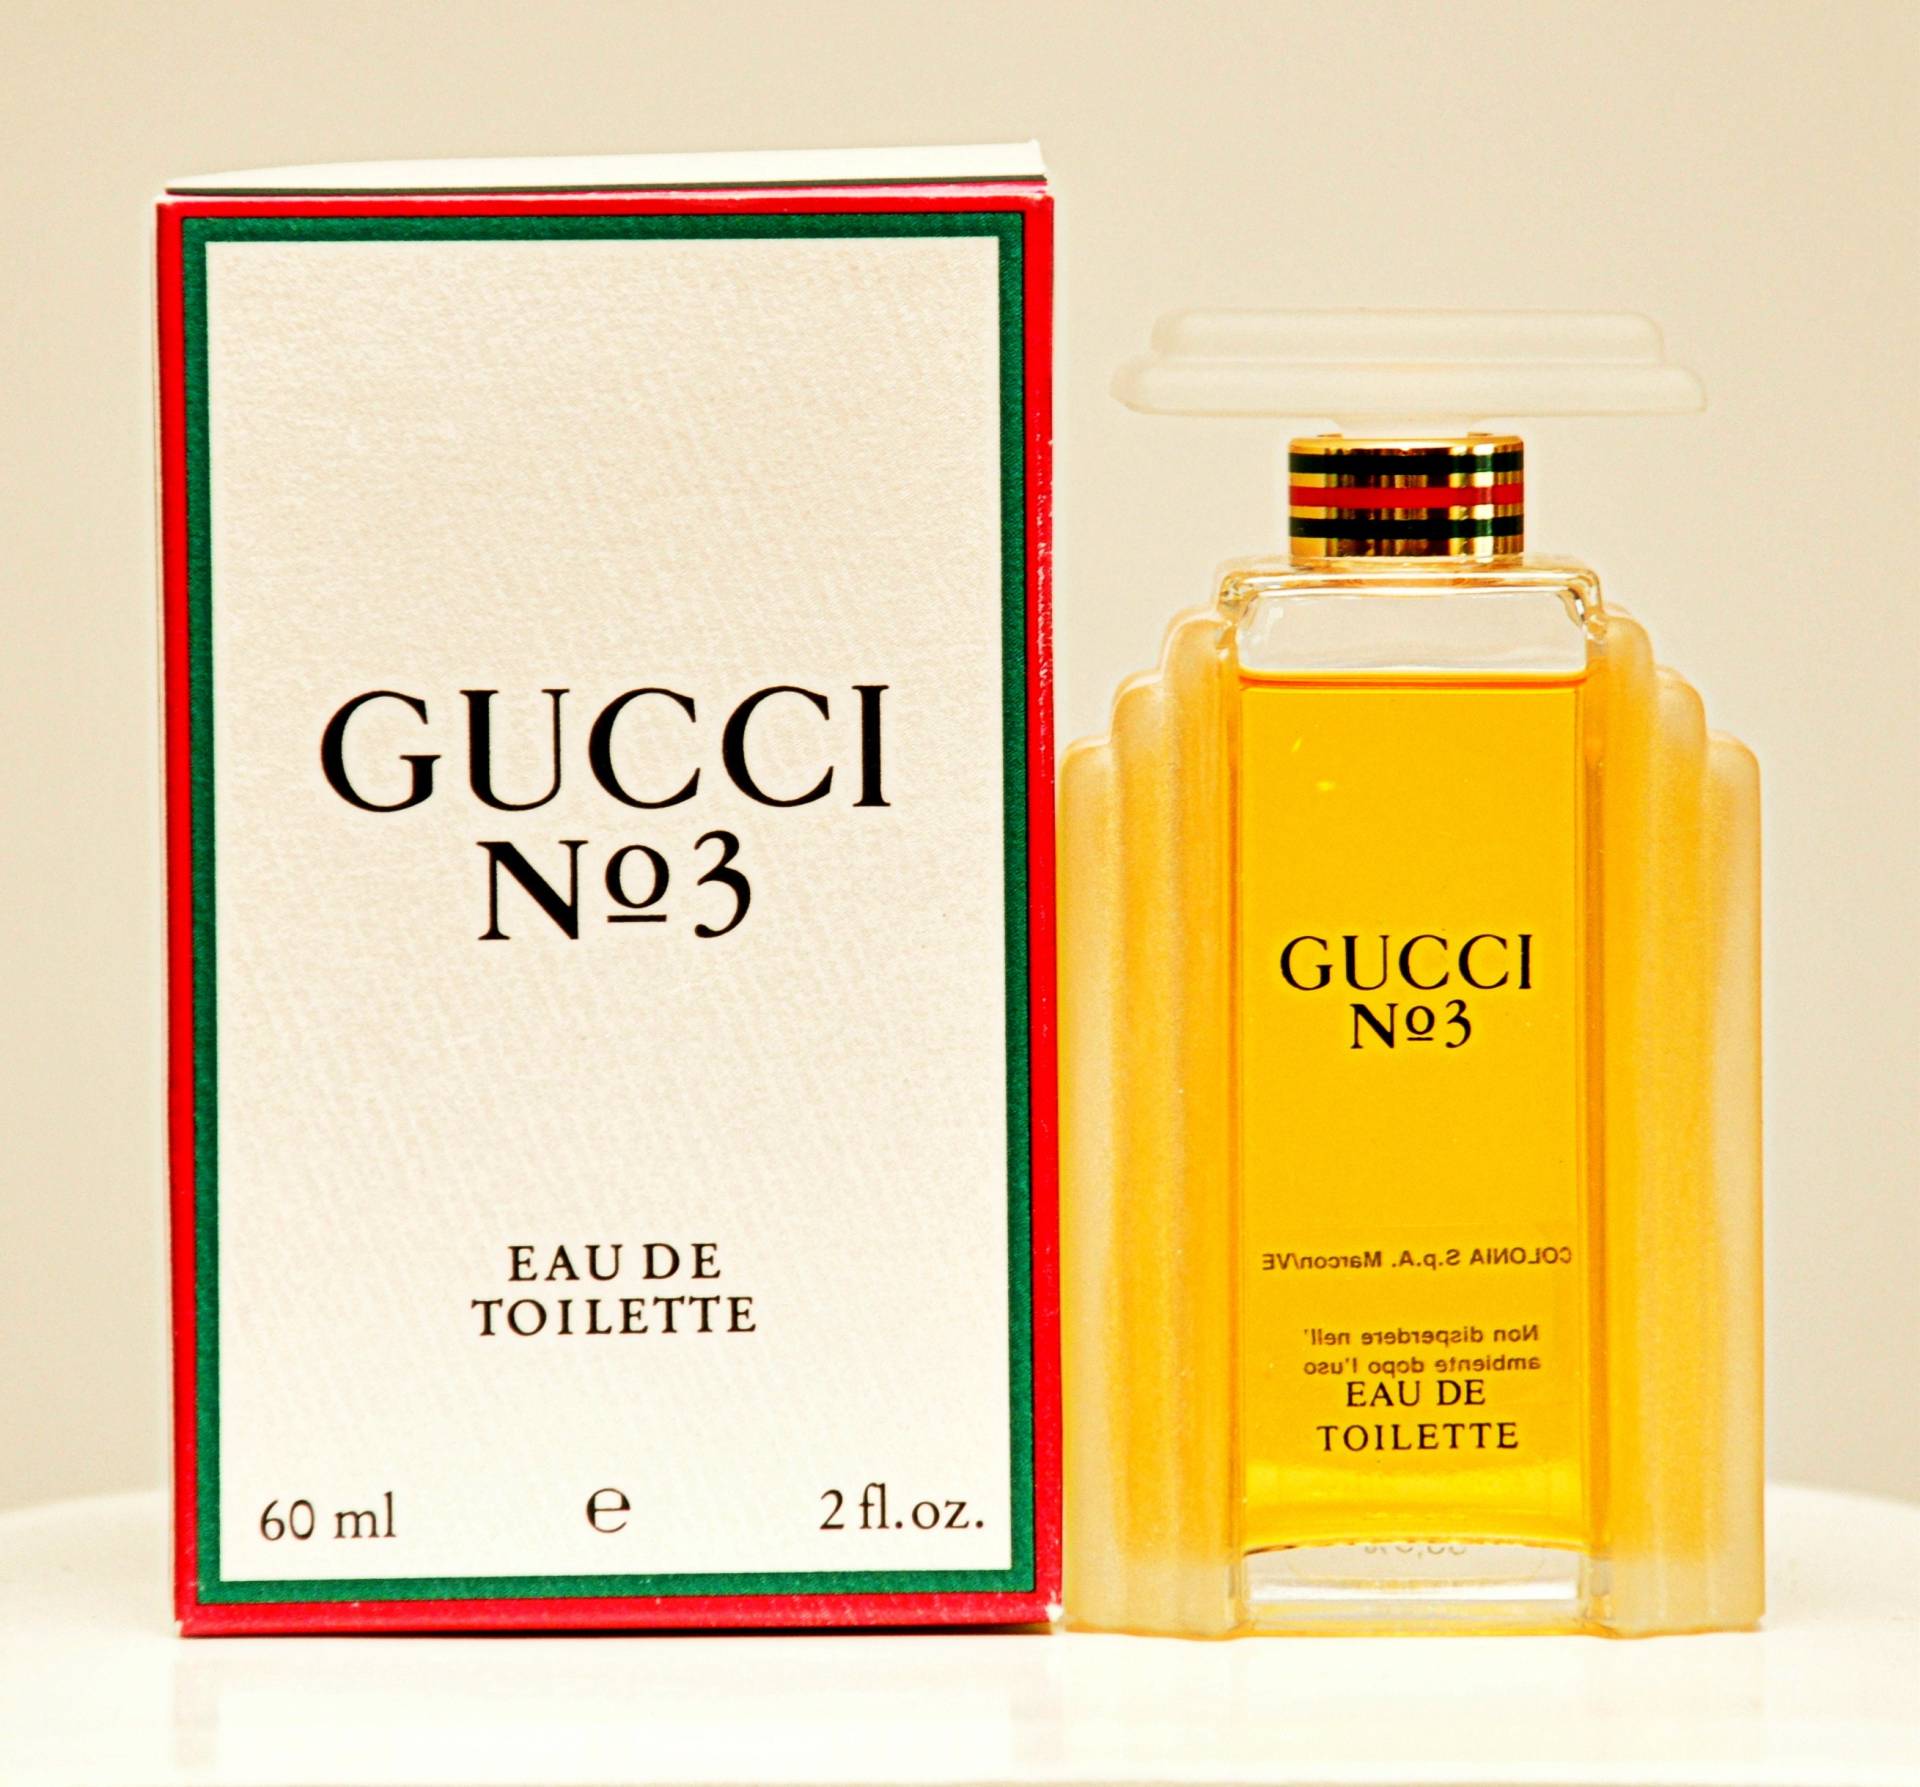 Gucci N. 3 Von Eau De Toilette Edt 60Ml Splash Non Spray Parfüm Frau Sehr Selten Vintage 1985 von Etsy - YourVintagePerfume